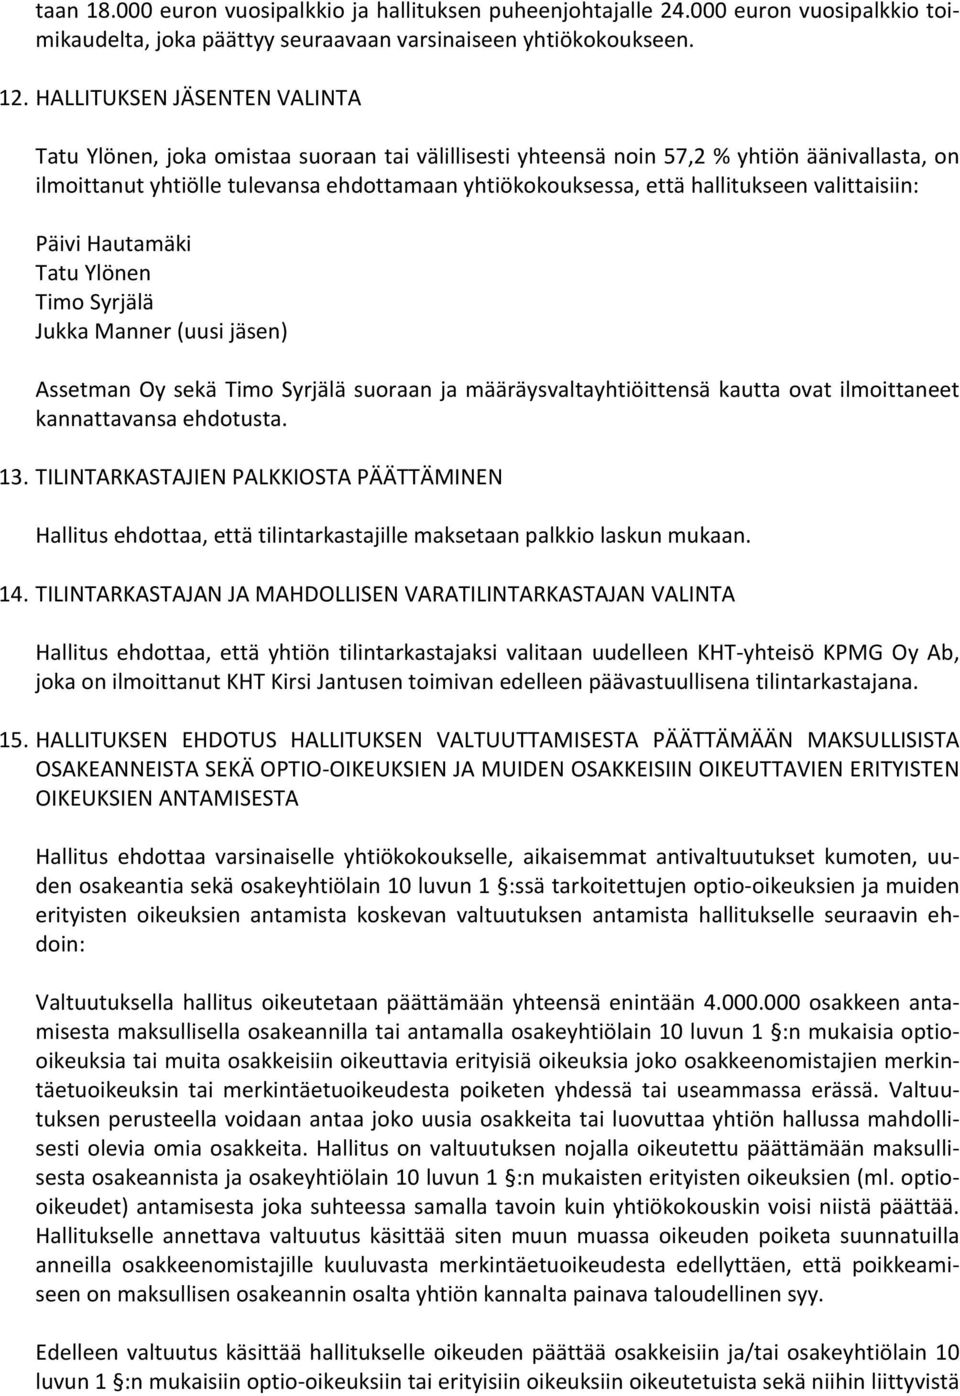 Oy sekä Timo Syrjälä suoraan ja määräysvaltayhtiöittensä kautta ovat ilmoittaneet kannattavansa ehdotusta. 13.